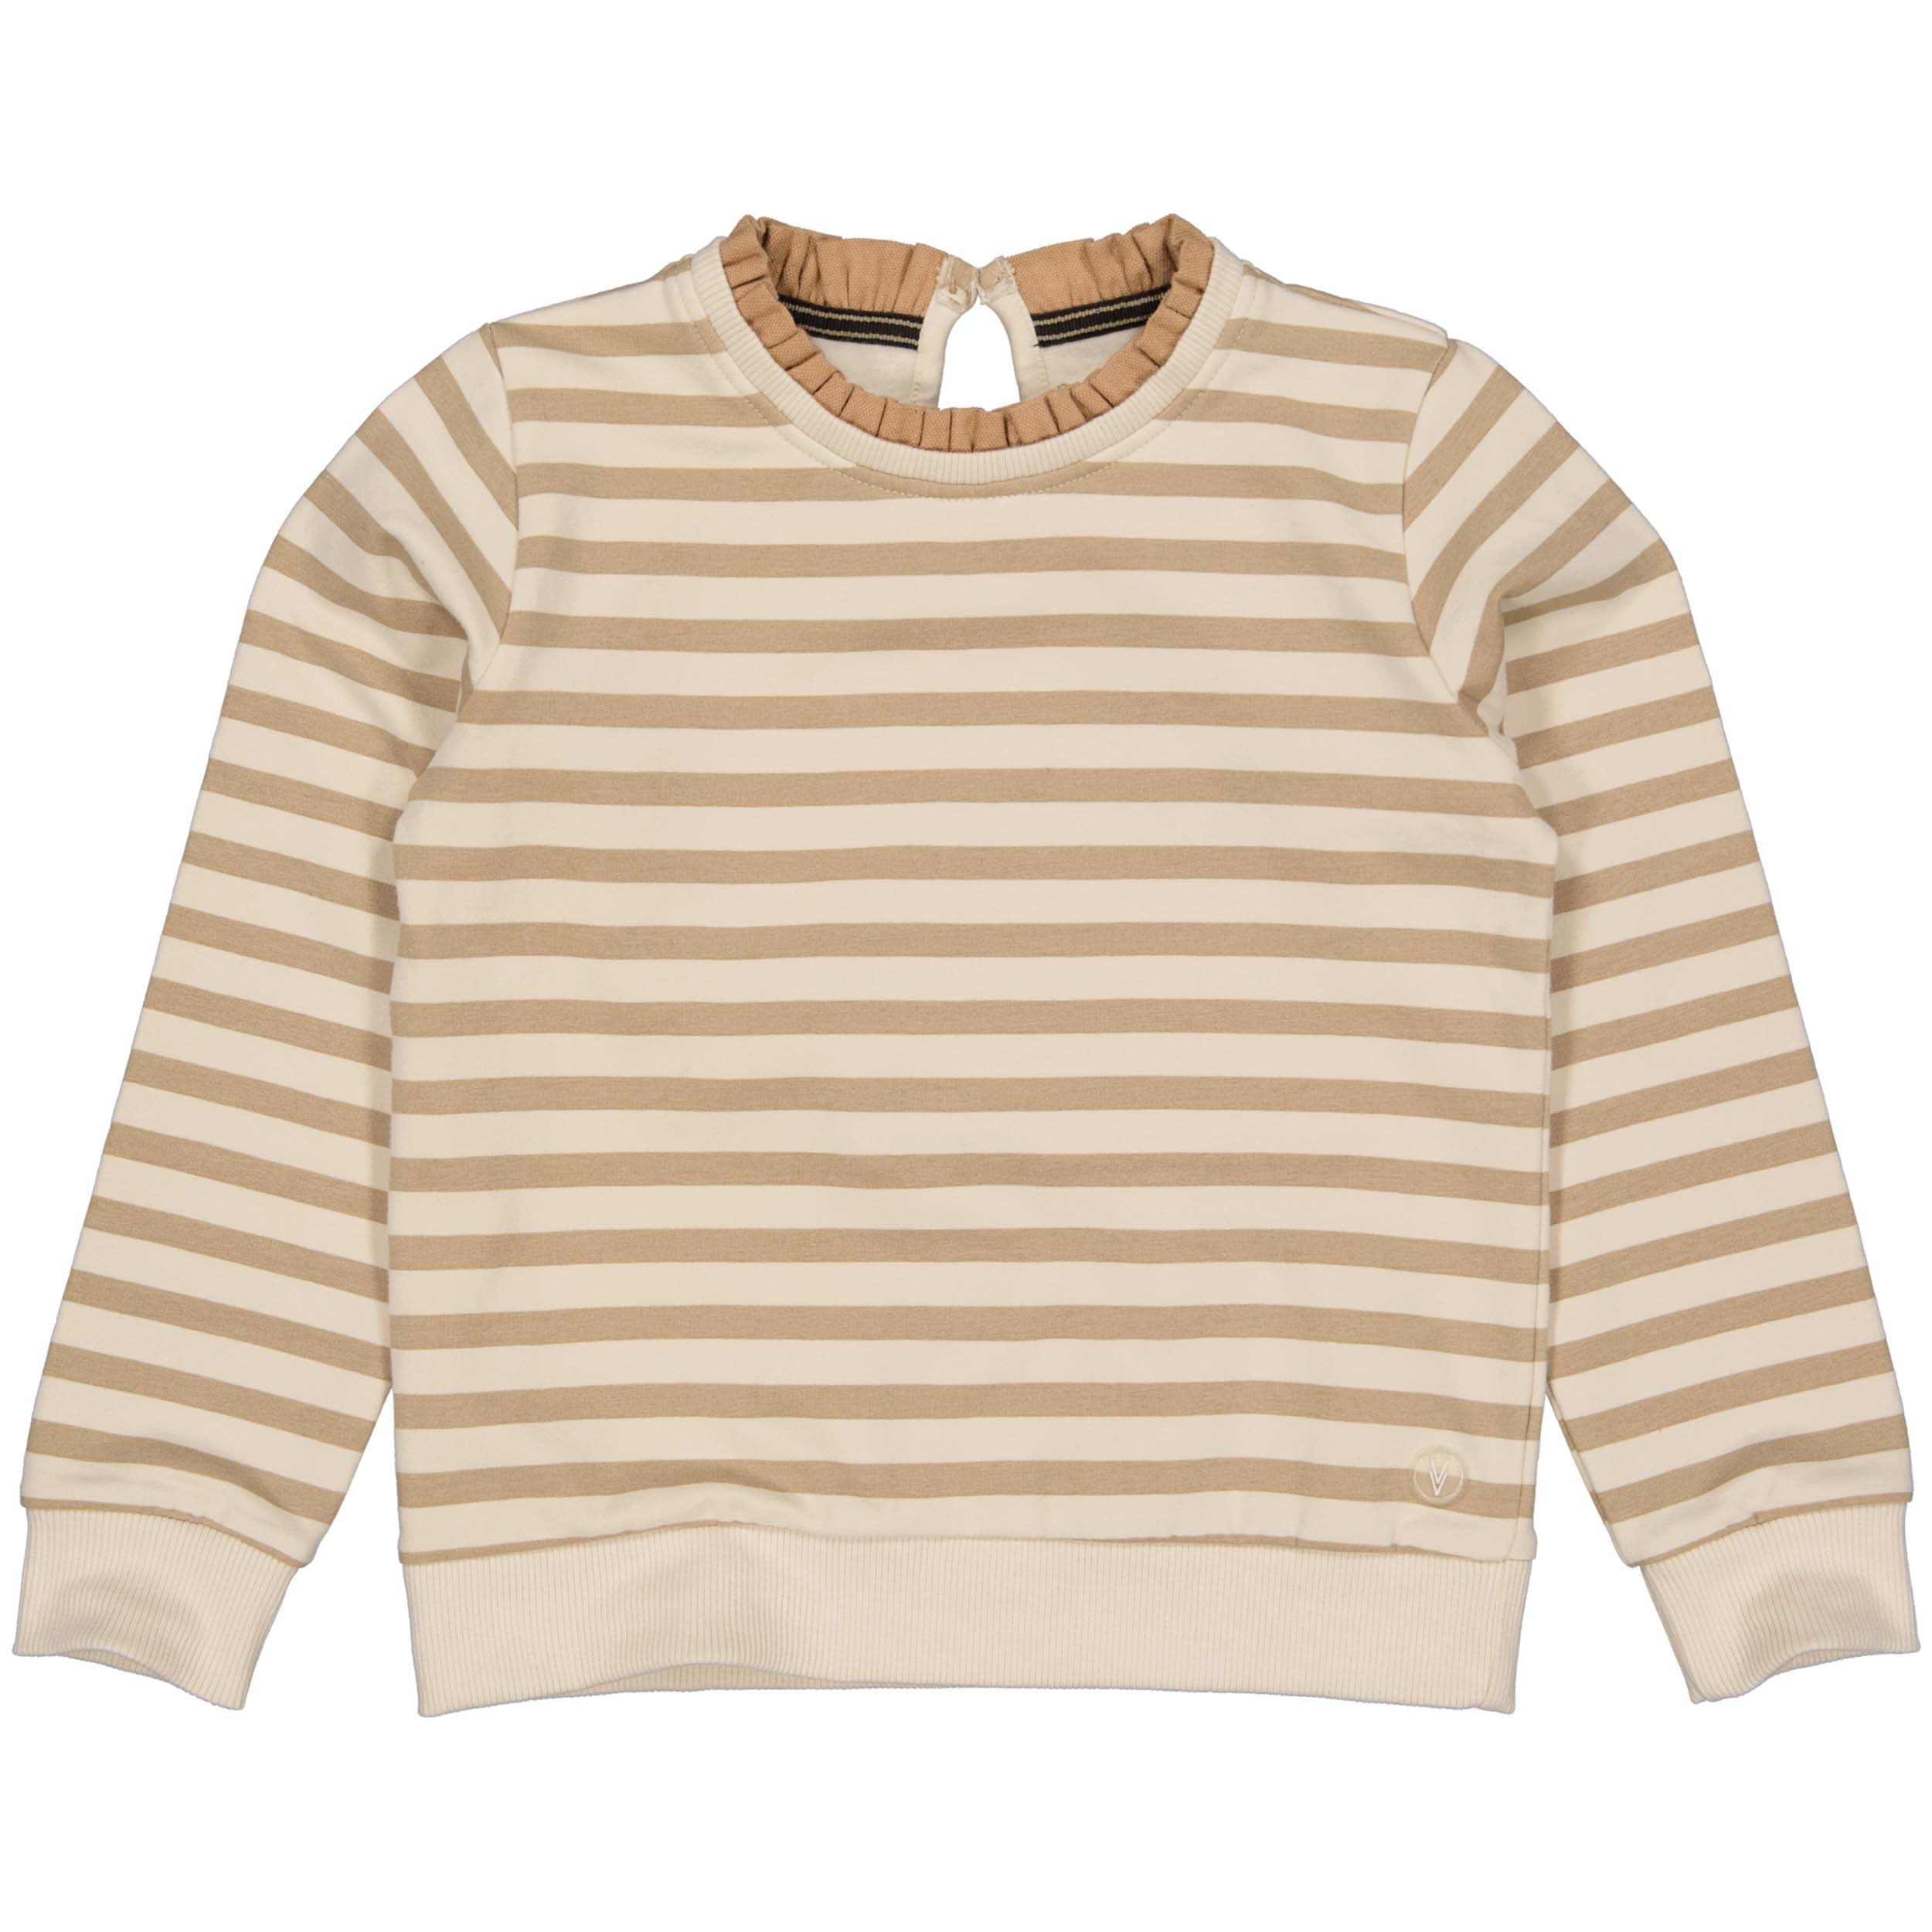 Meisjes Sweater GERLYNNLW231 van Little Levv in de kleur AOP Sand Nomad Stripe in maat 128.